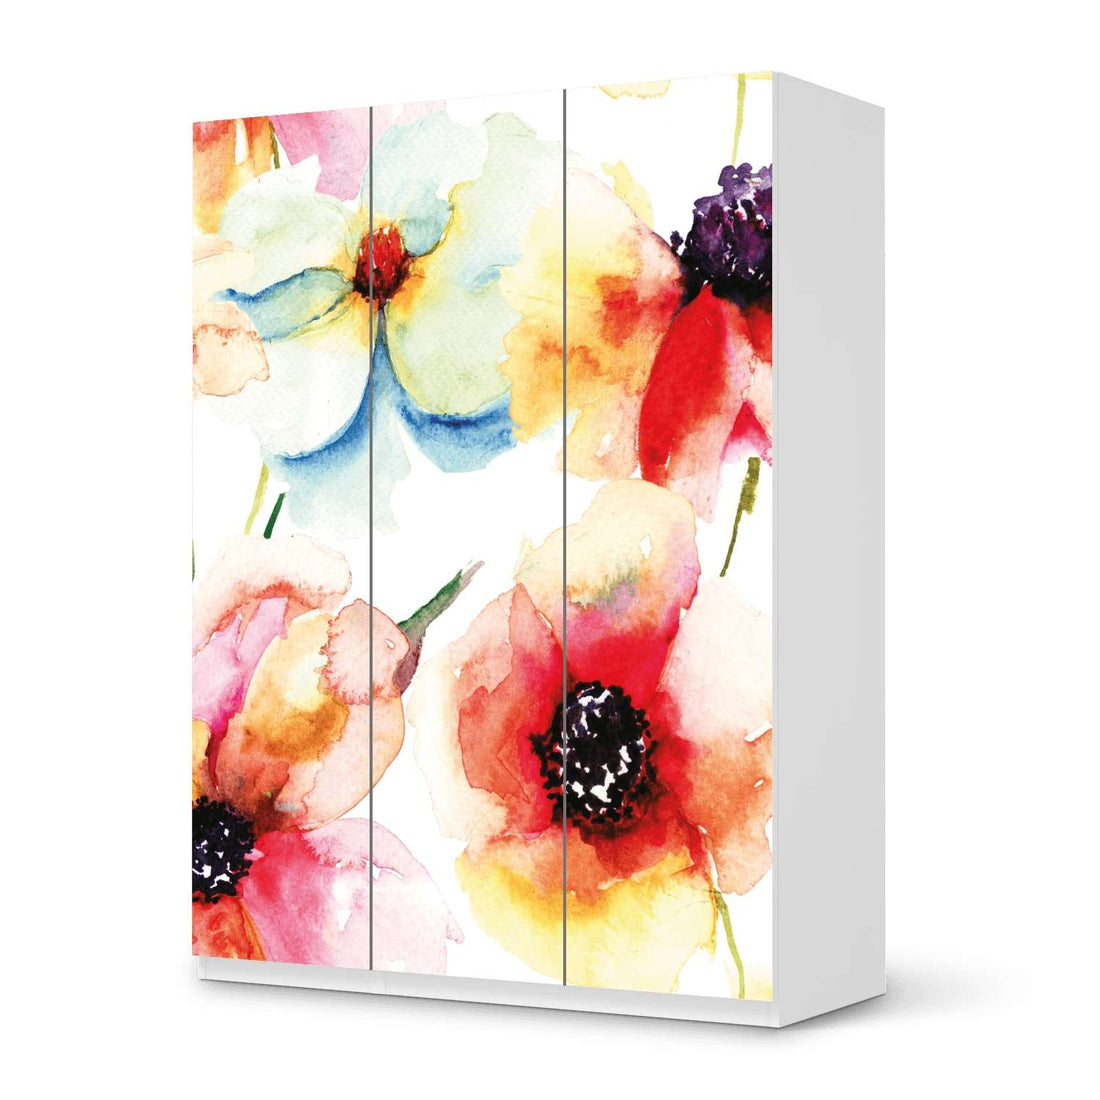 Folie für Möbel Water Color Flowers - IKEA Pax Schrank 201 cm Höhe - 3 Türen - weiss